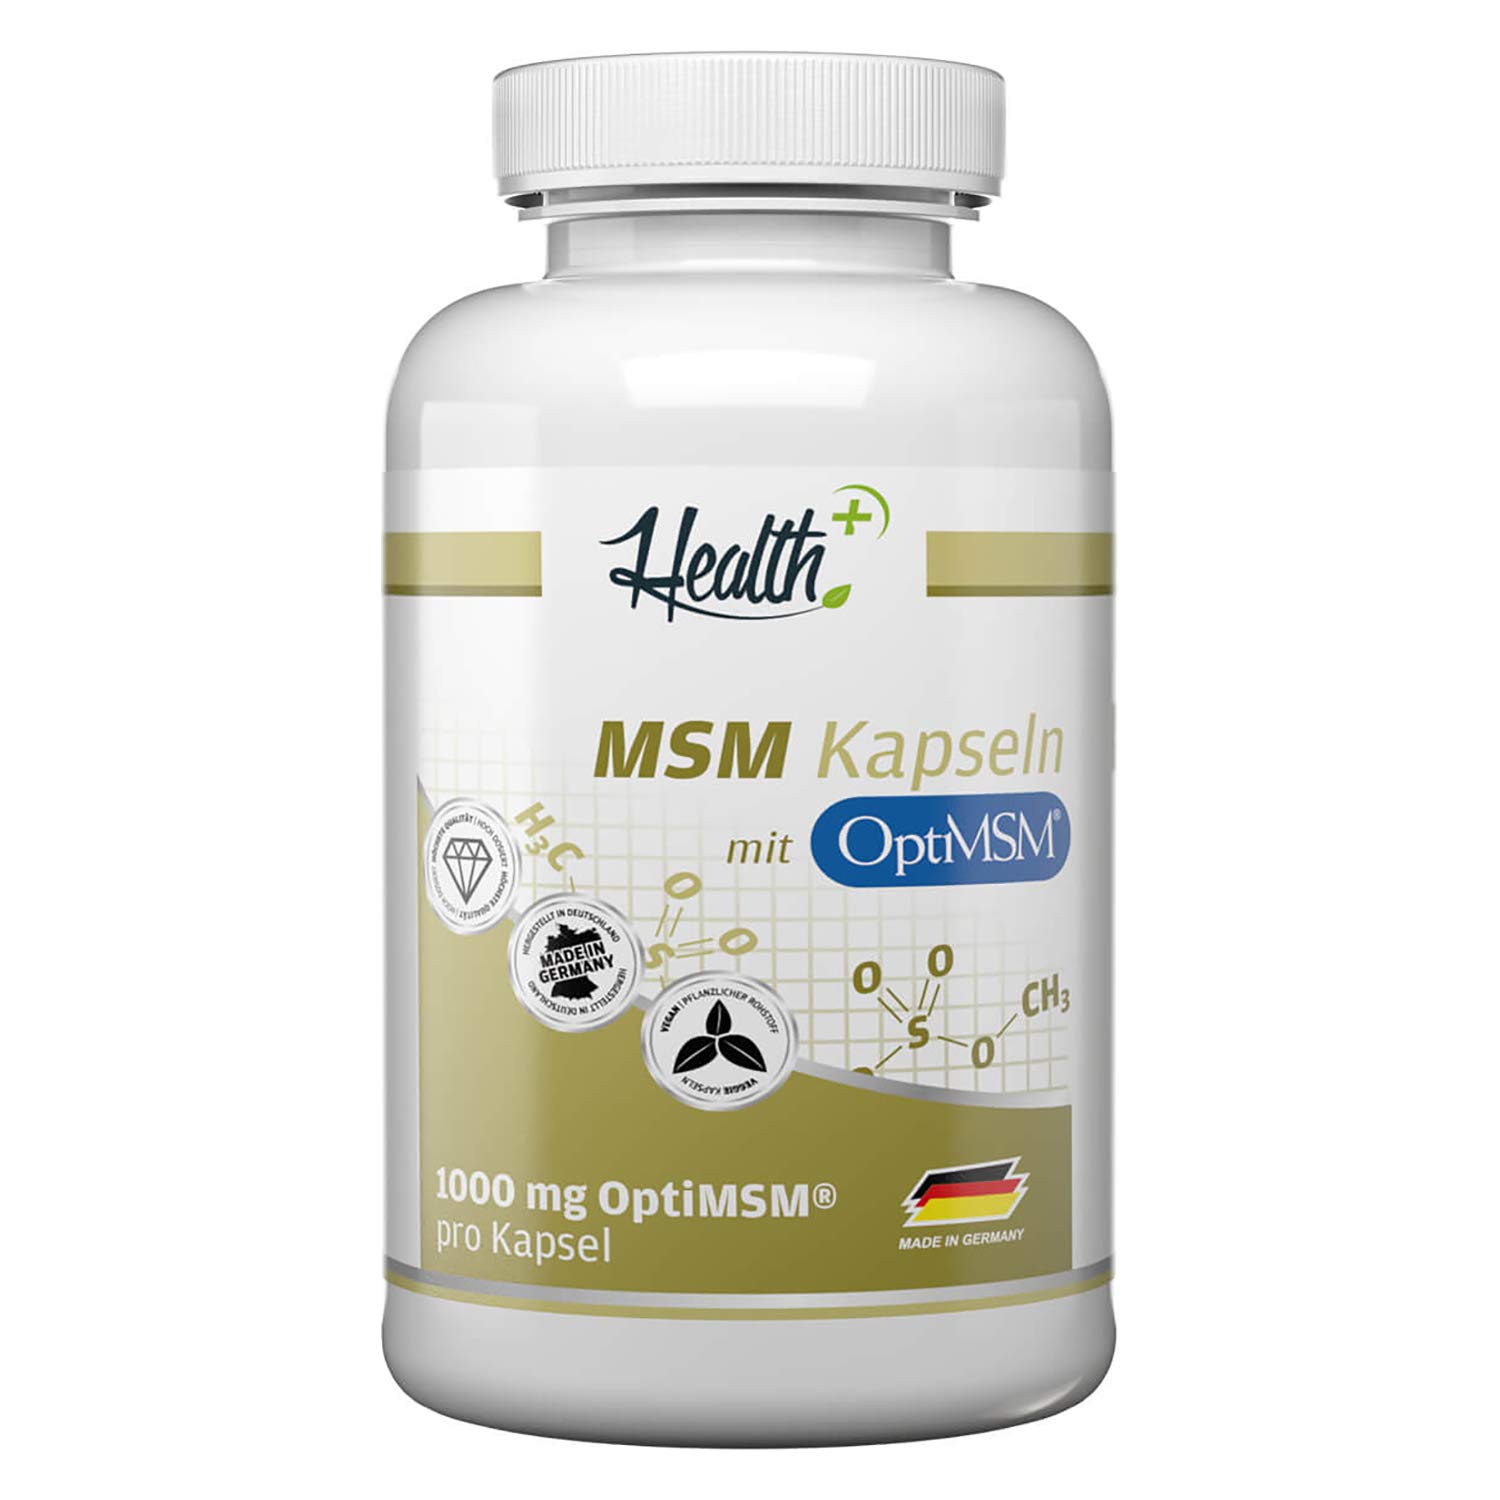 Health+ MSM Kapseln - 120 Kapseln hochdosiert mit OptiMSM, mehrfach destilliert, Made in Germany